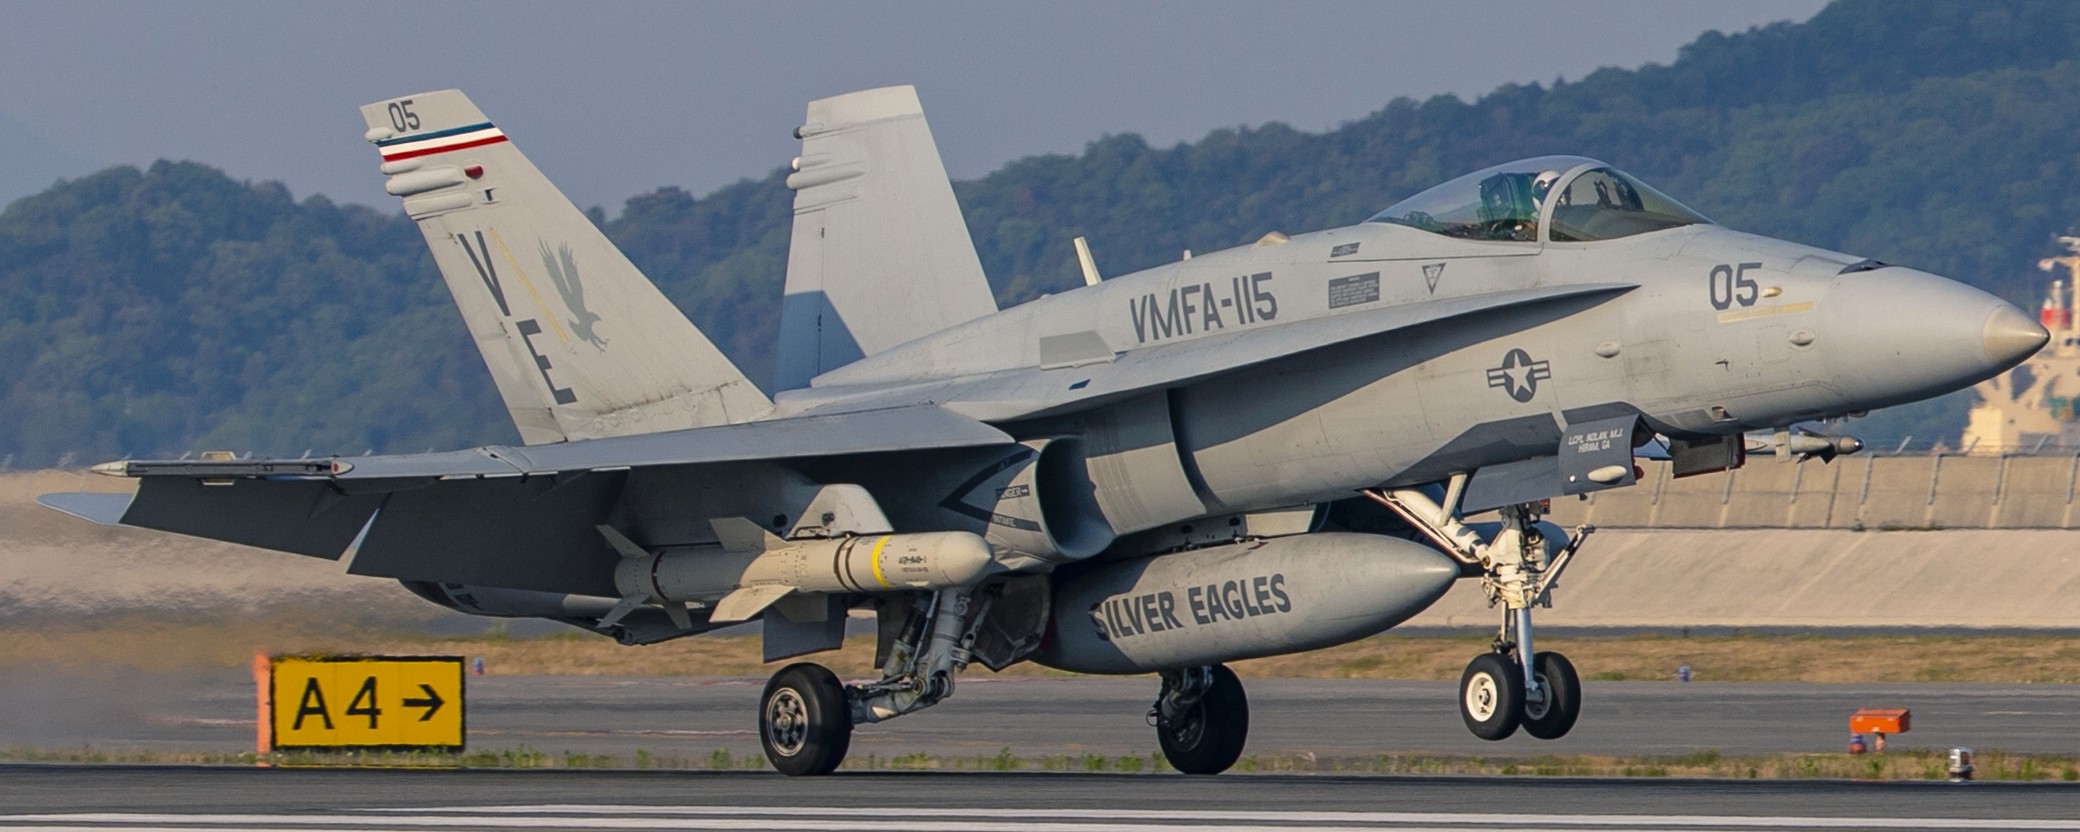 vmfa-115 silver eagles marine fighter attack squadron usmc f/a-18c hornet 193 agm-84 harpoon